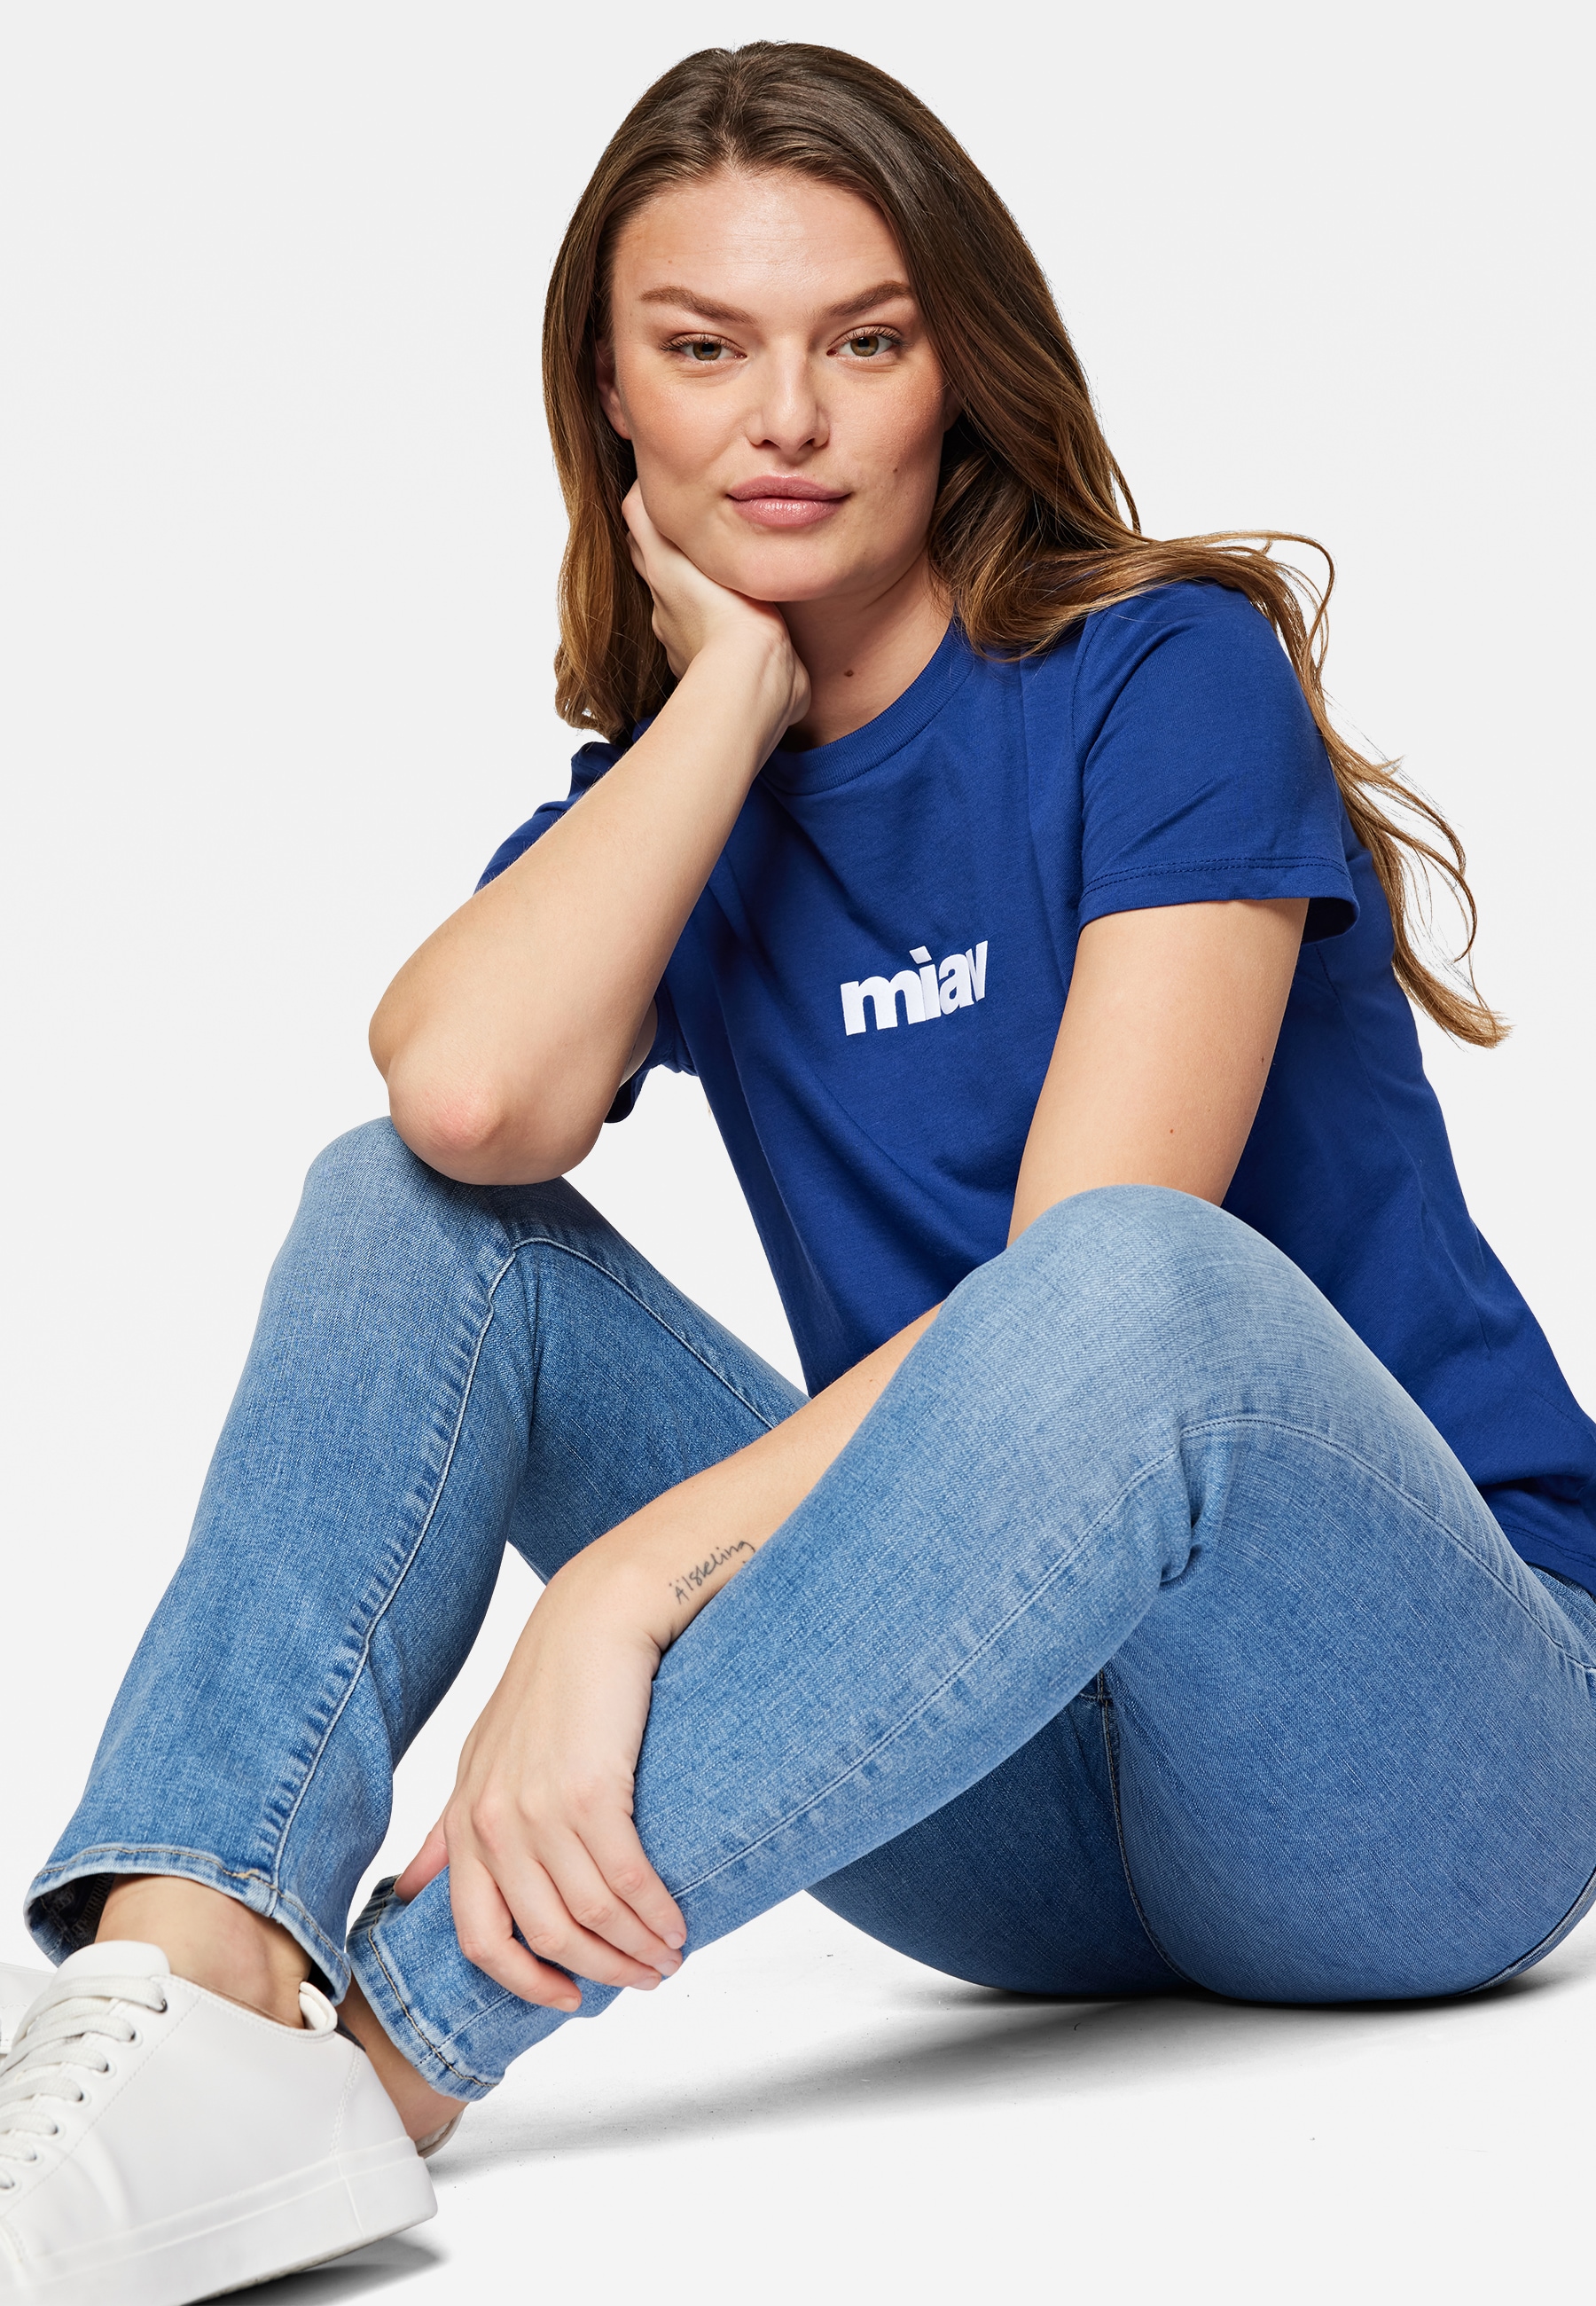 Mavi T-Shirt »MIAV PRINTED T-SHIRT«, T-Shirt mit Miav Print